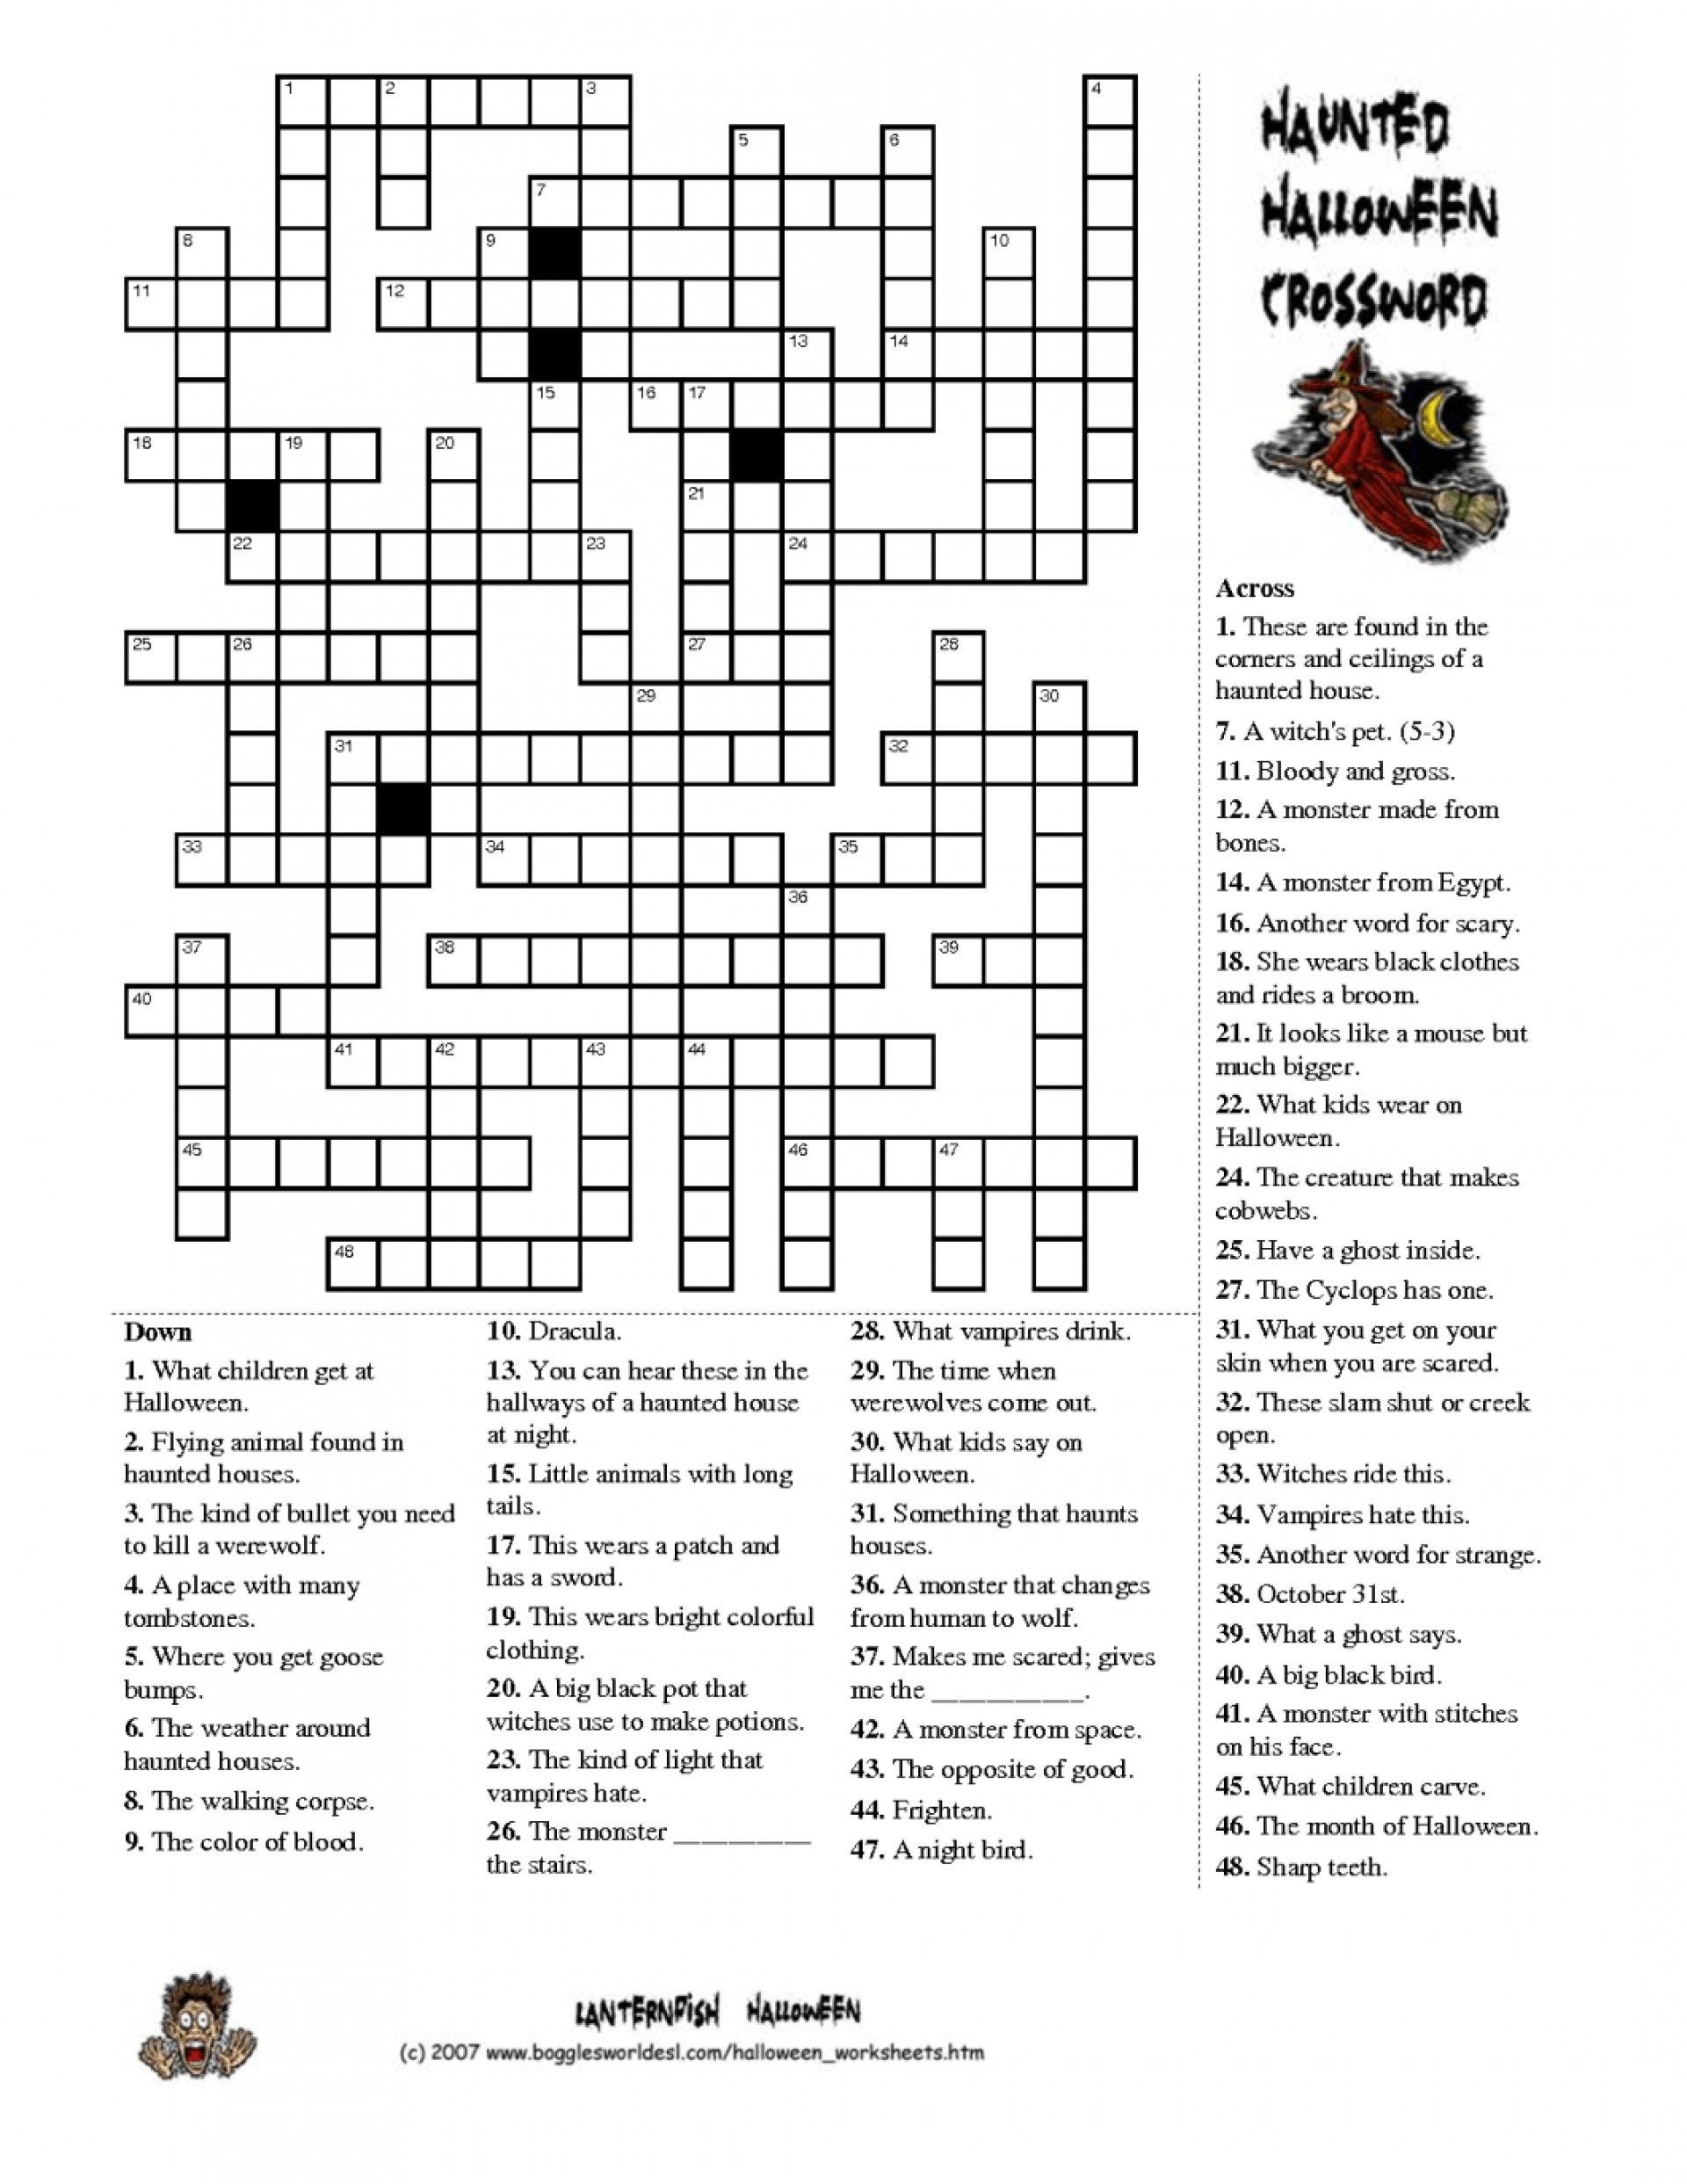 Easy Halloween Crossword Puzzle Printable